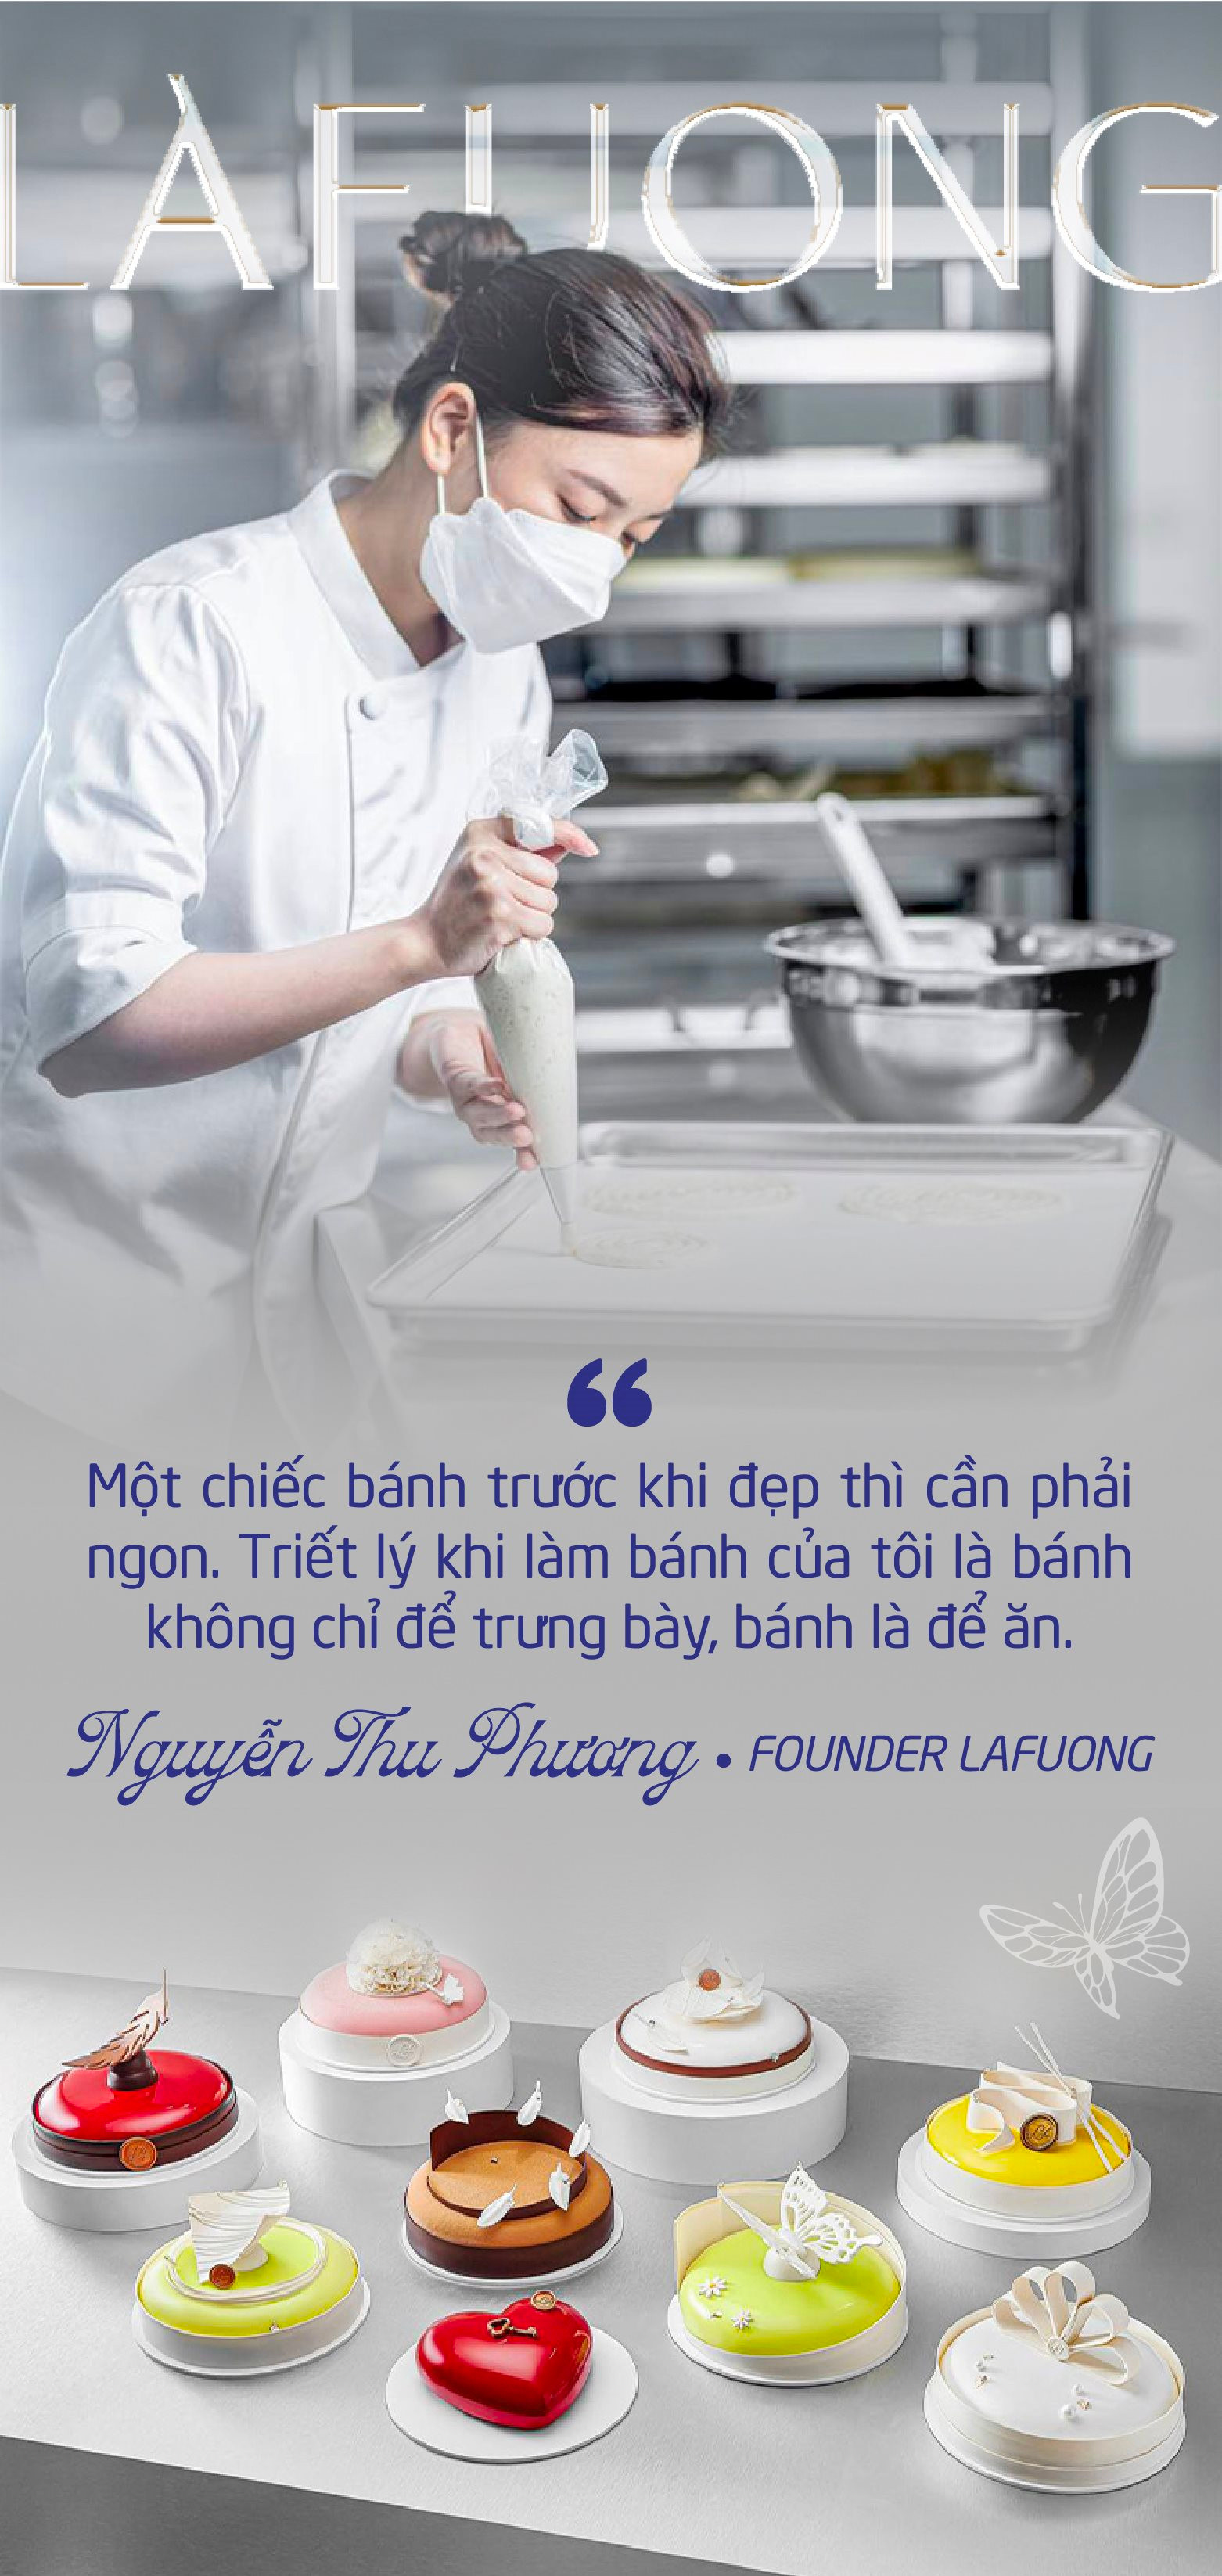 Founder thương hiệu bánh ngọt Pháp cao cấp LaFuong: Động lực của tôi là thay đổi định kiến ‘mua bánh sinh nhật chỉ để thổi nến’ của nhiều người Việt - Ảnh 4.